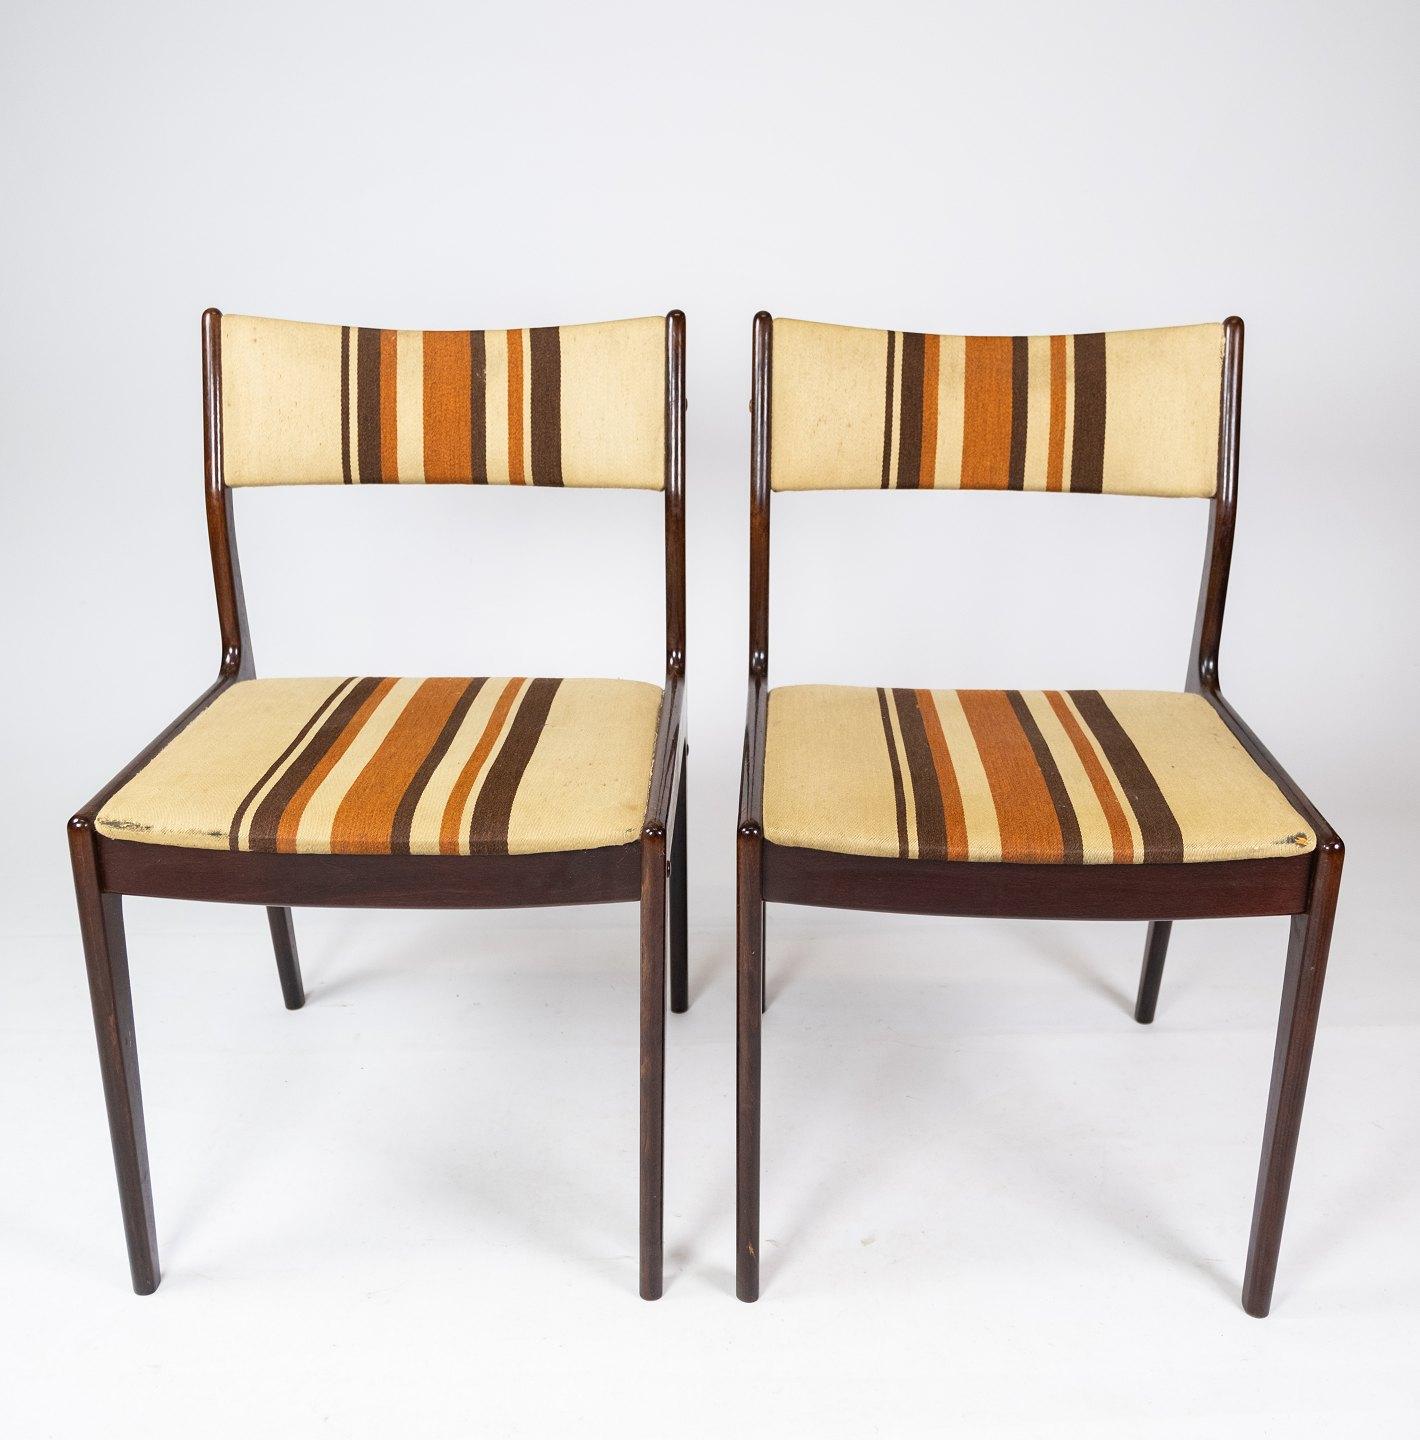 Cette paire de chaises, provenant de l'usine réputée Uldum Furniture au Danemark, incarne l'éthique emblématique du design danois des années 1960. Fabriquées en bois foncé et revêtues d'un tissu rayé clair, ces chaises présentent un mélange